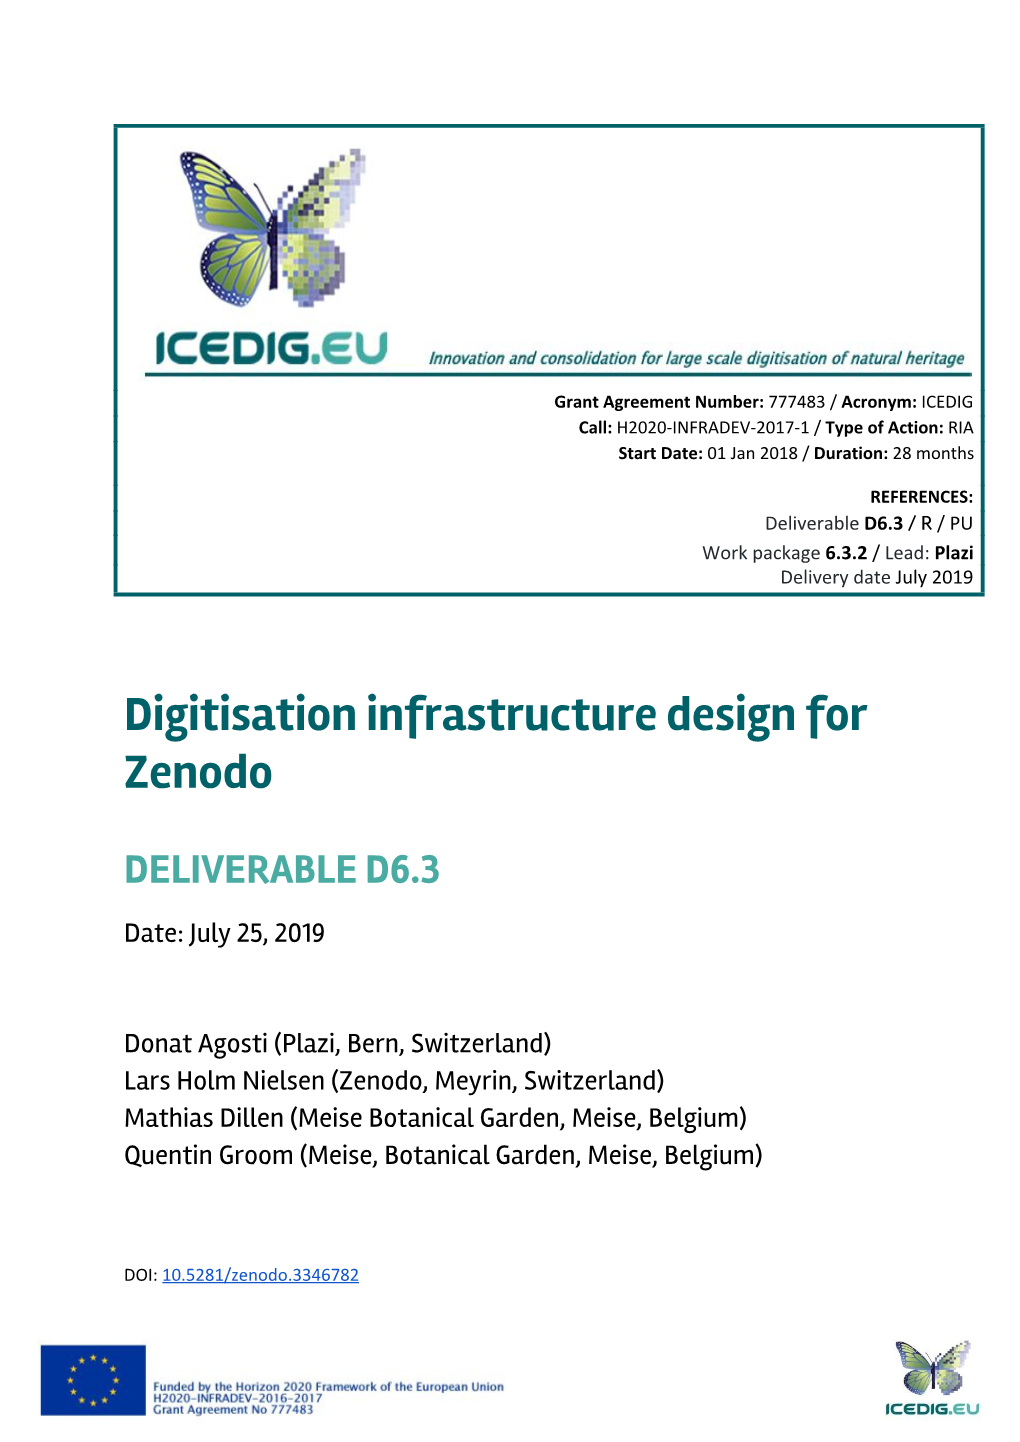 Digitisation Infrastructure Design for Zenodo